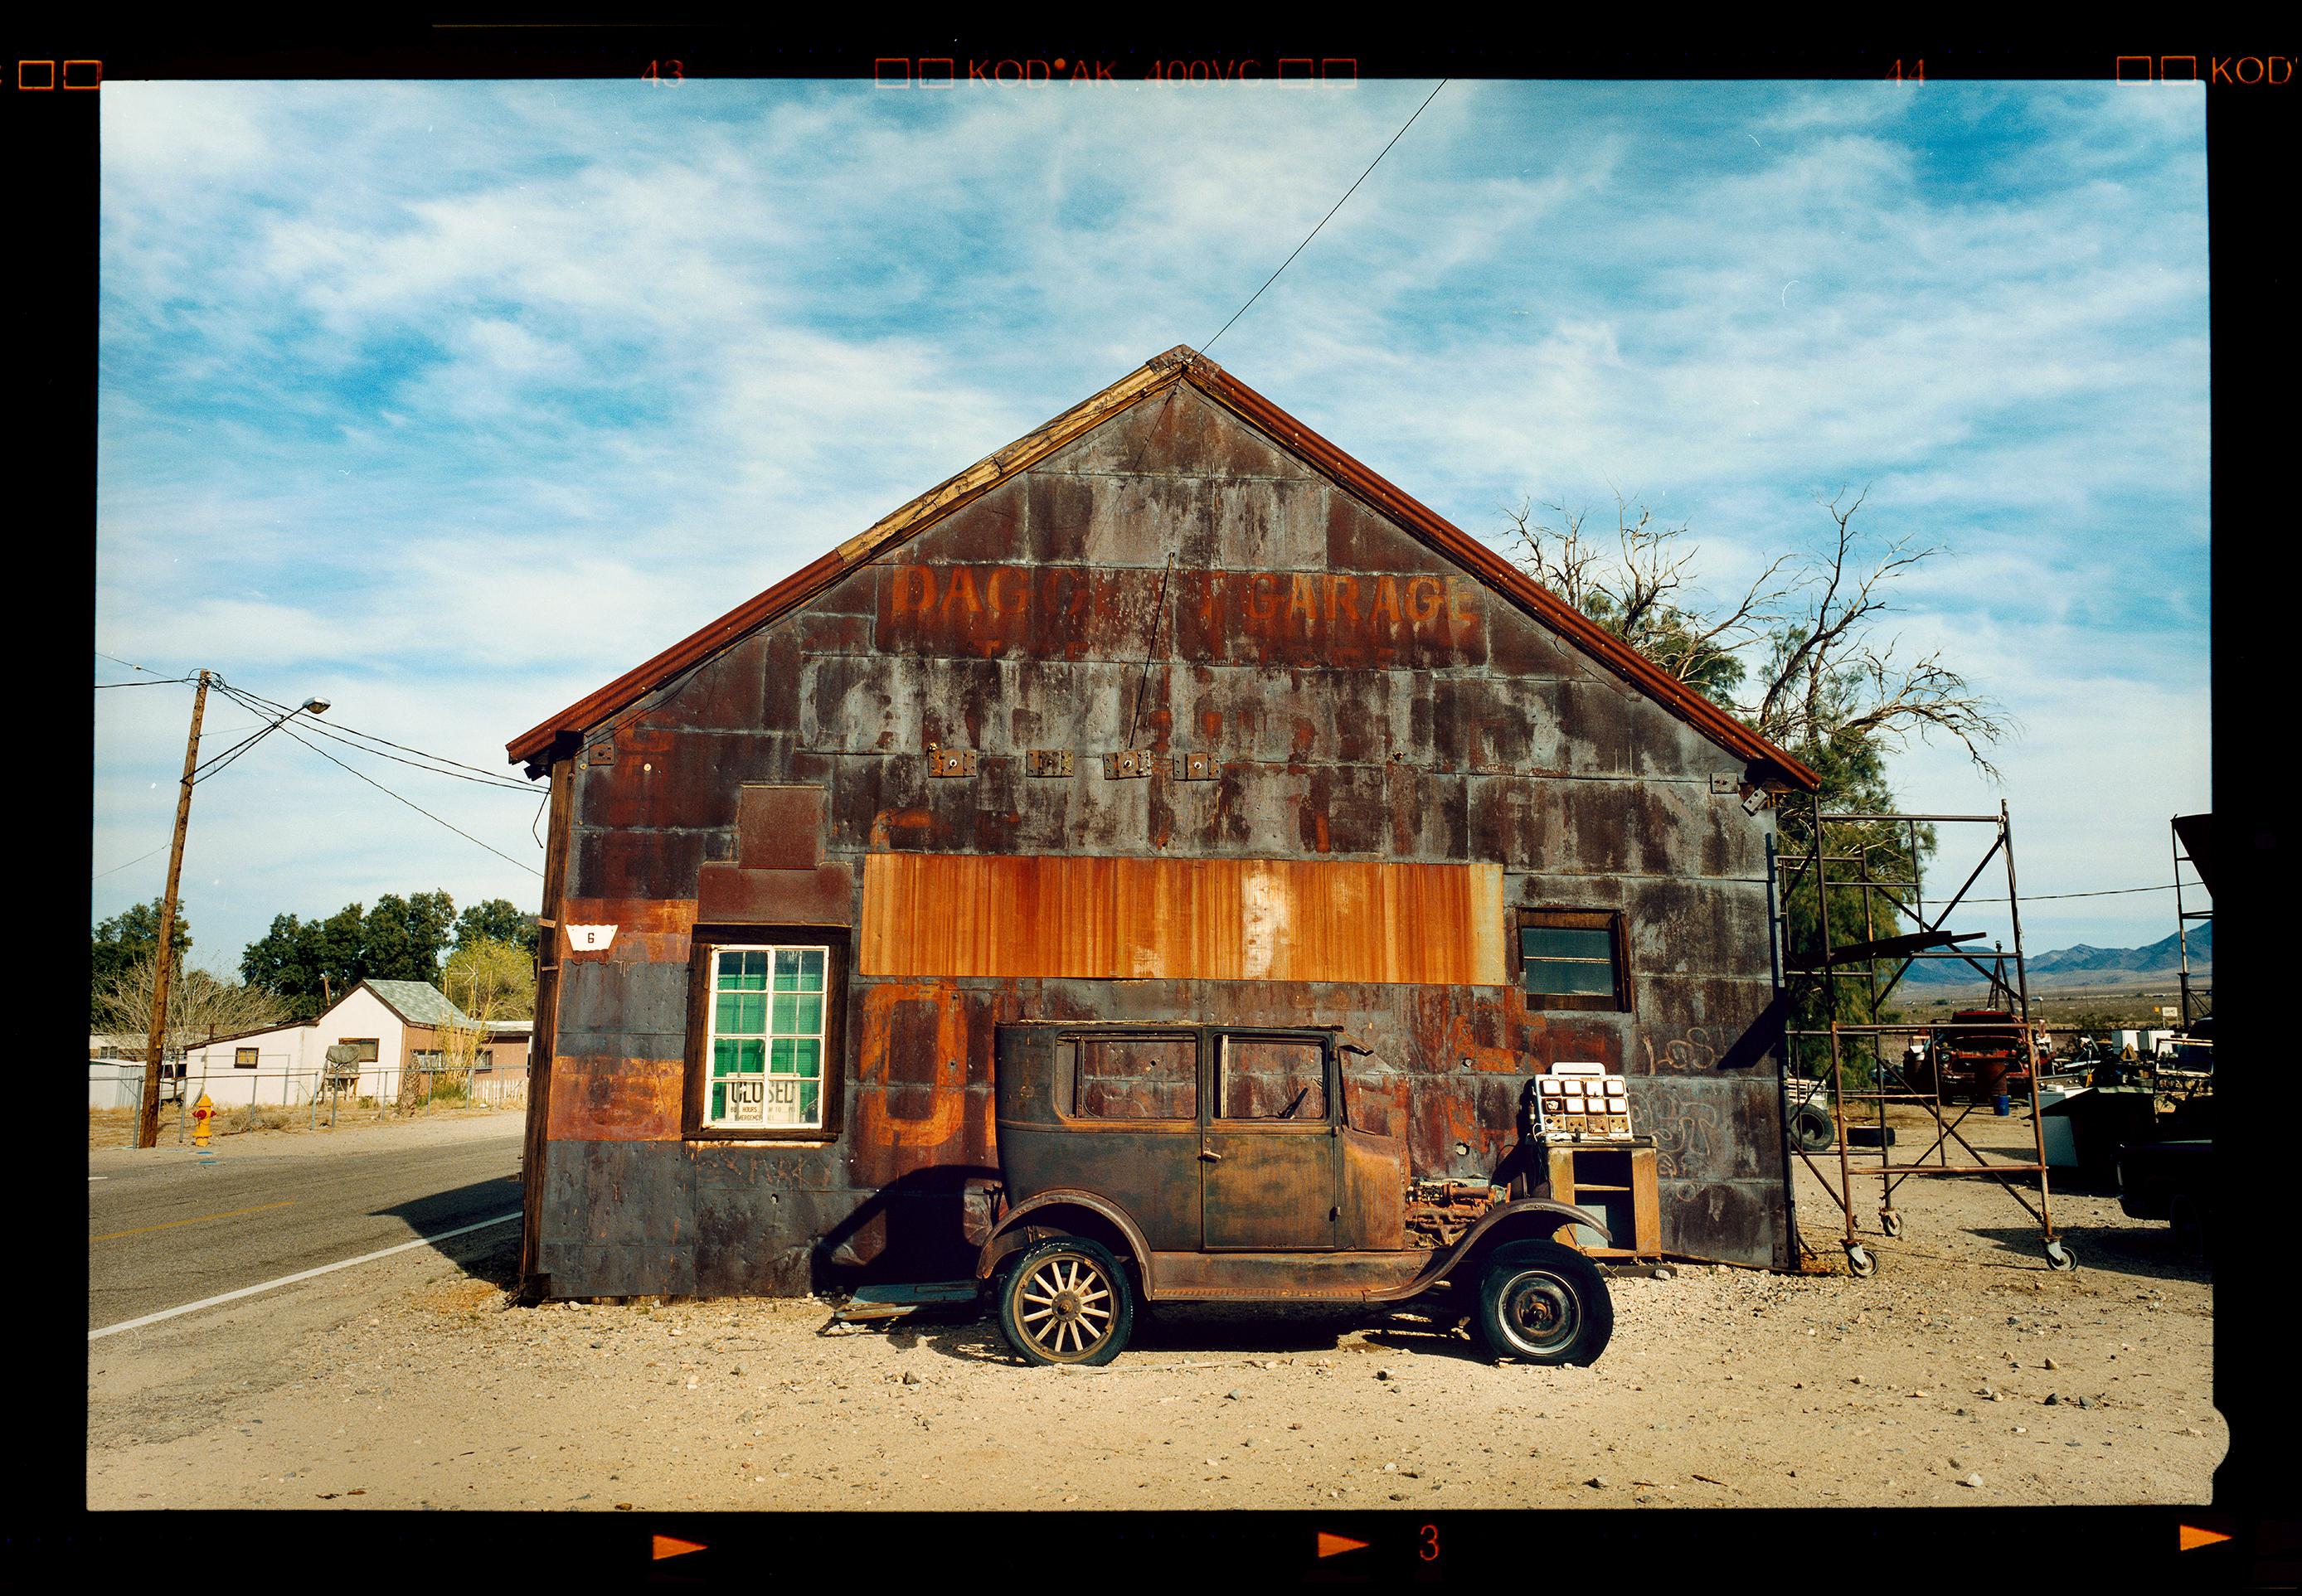 Modell T und Garage, Daggett, Kalifornien – Farbfotografie